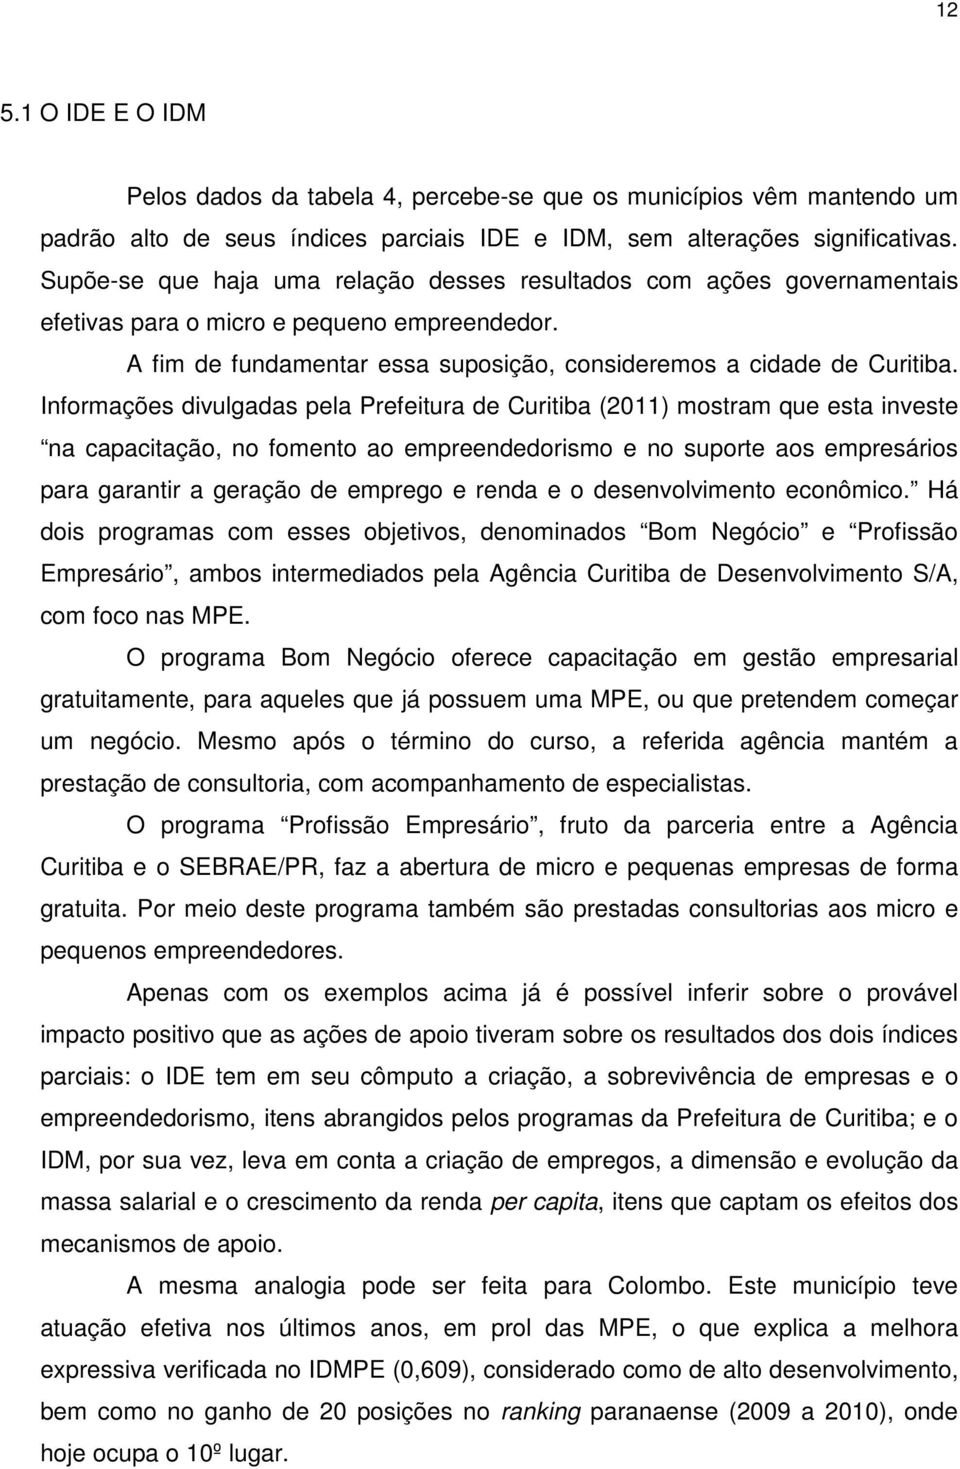 Informações divulgadas pela Prefeitura de Curitiba (2011) mostram que esta investe na capacitação, no fomento ao empreendedorismo e no suporte aos empresários para garantir a geração de emprego e